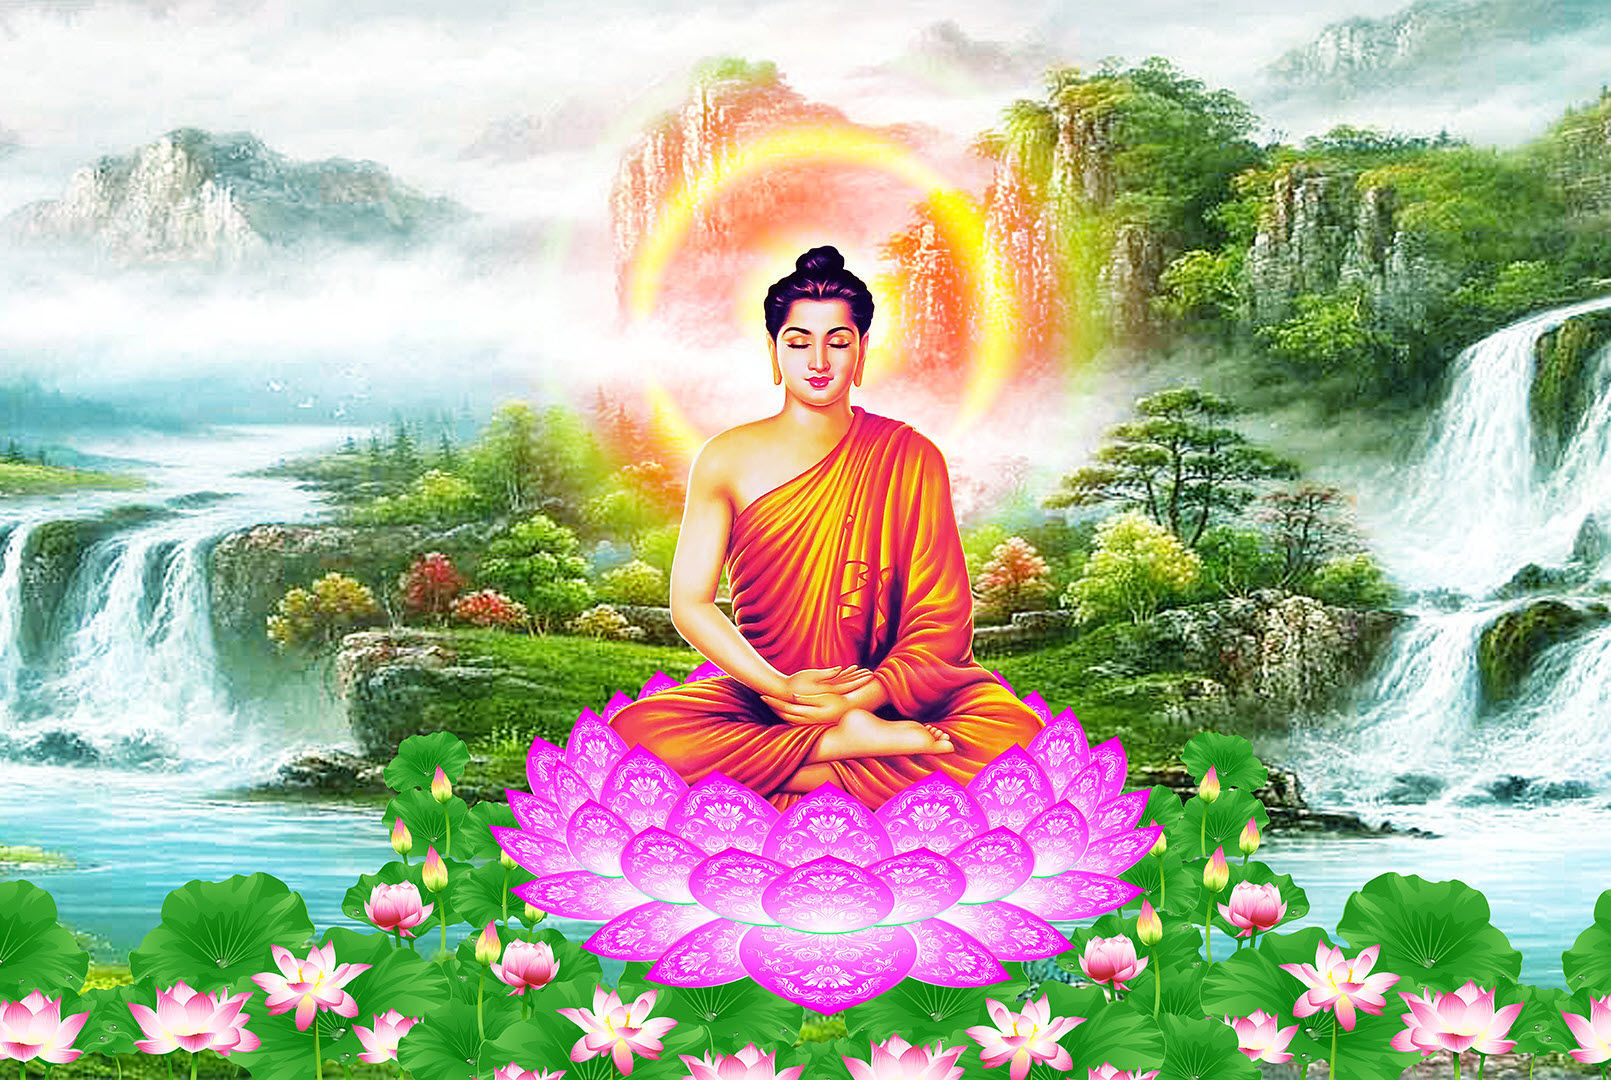 Bộ Sưu Tập Hình Ảnh Tuyệt Đẹp về Đức Phật Thích Ca Mâu Ni (2) - Chua Dai Bi  - Chua Dai Bi Plano TX